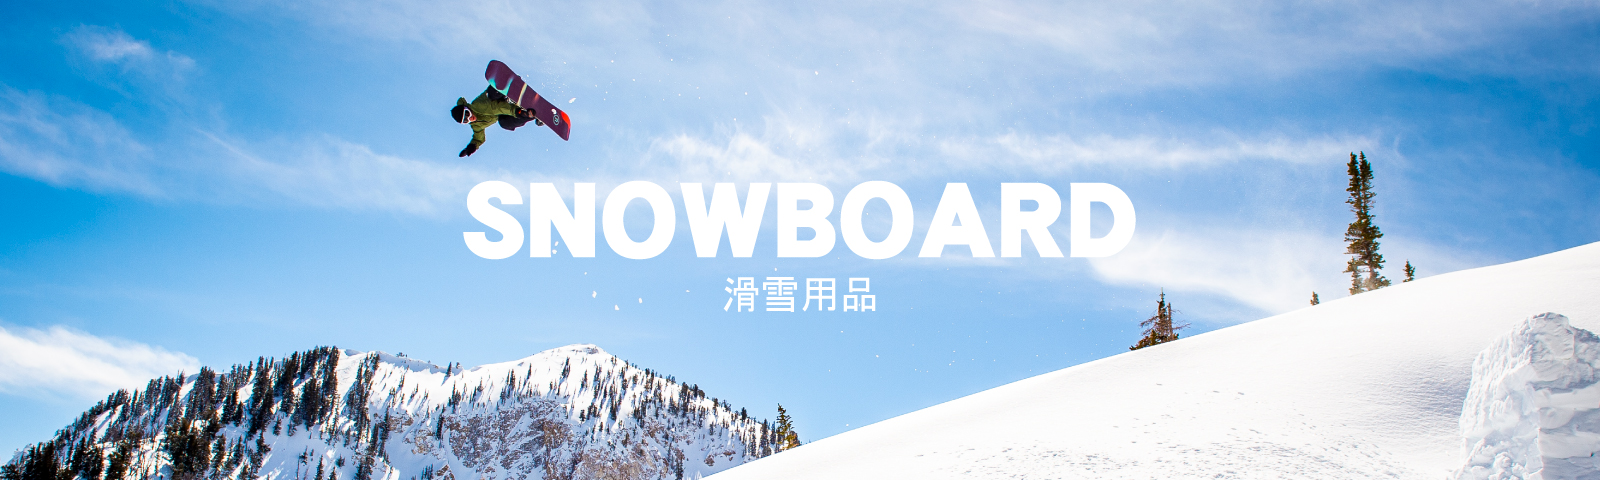 滑雪用品 / Snow